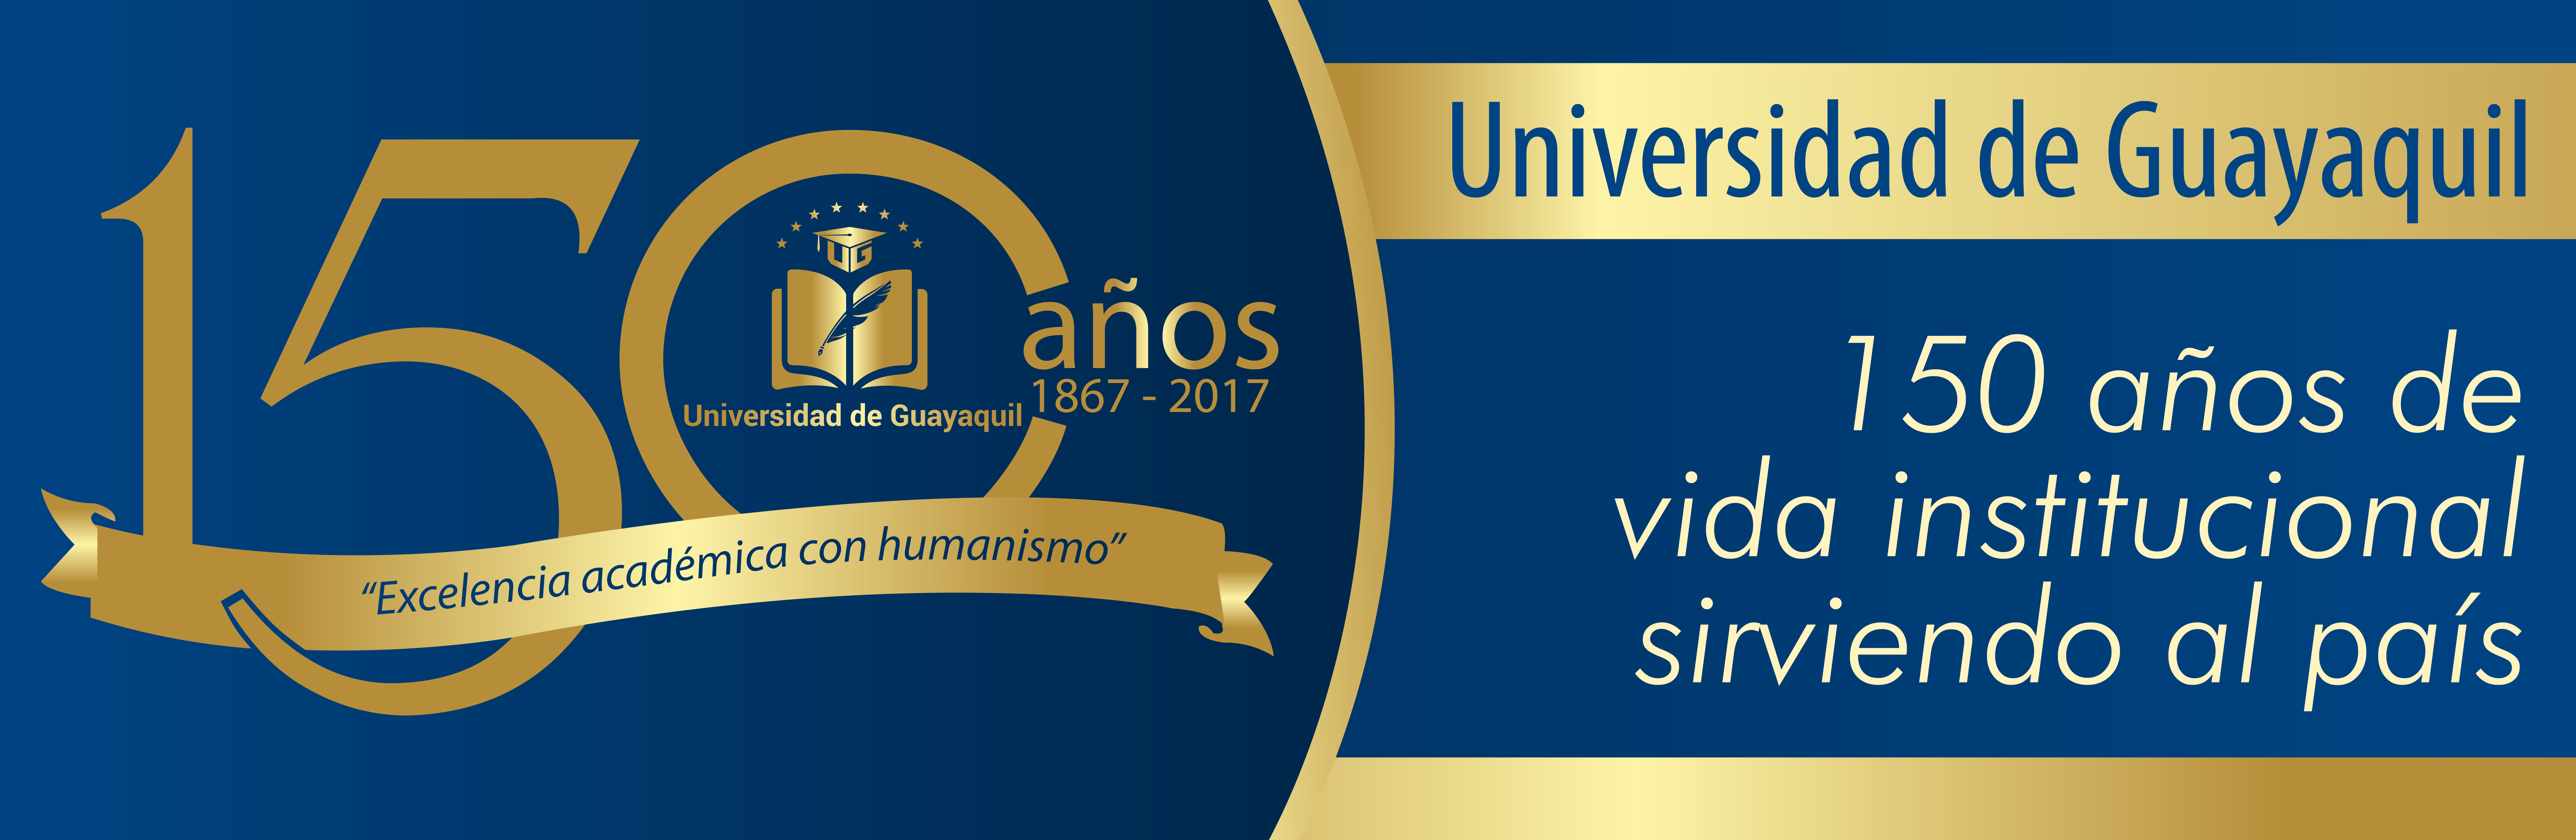 Universidad de Guayaquil – 150 años